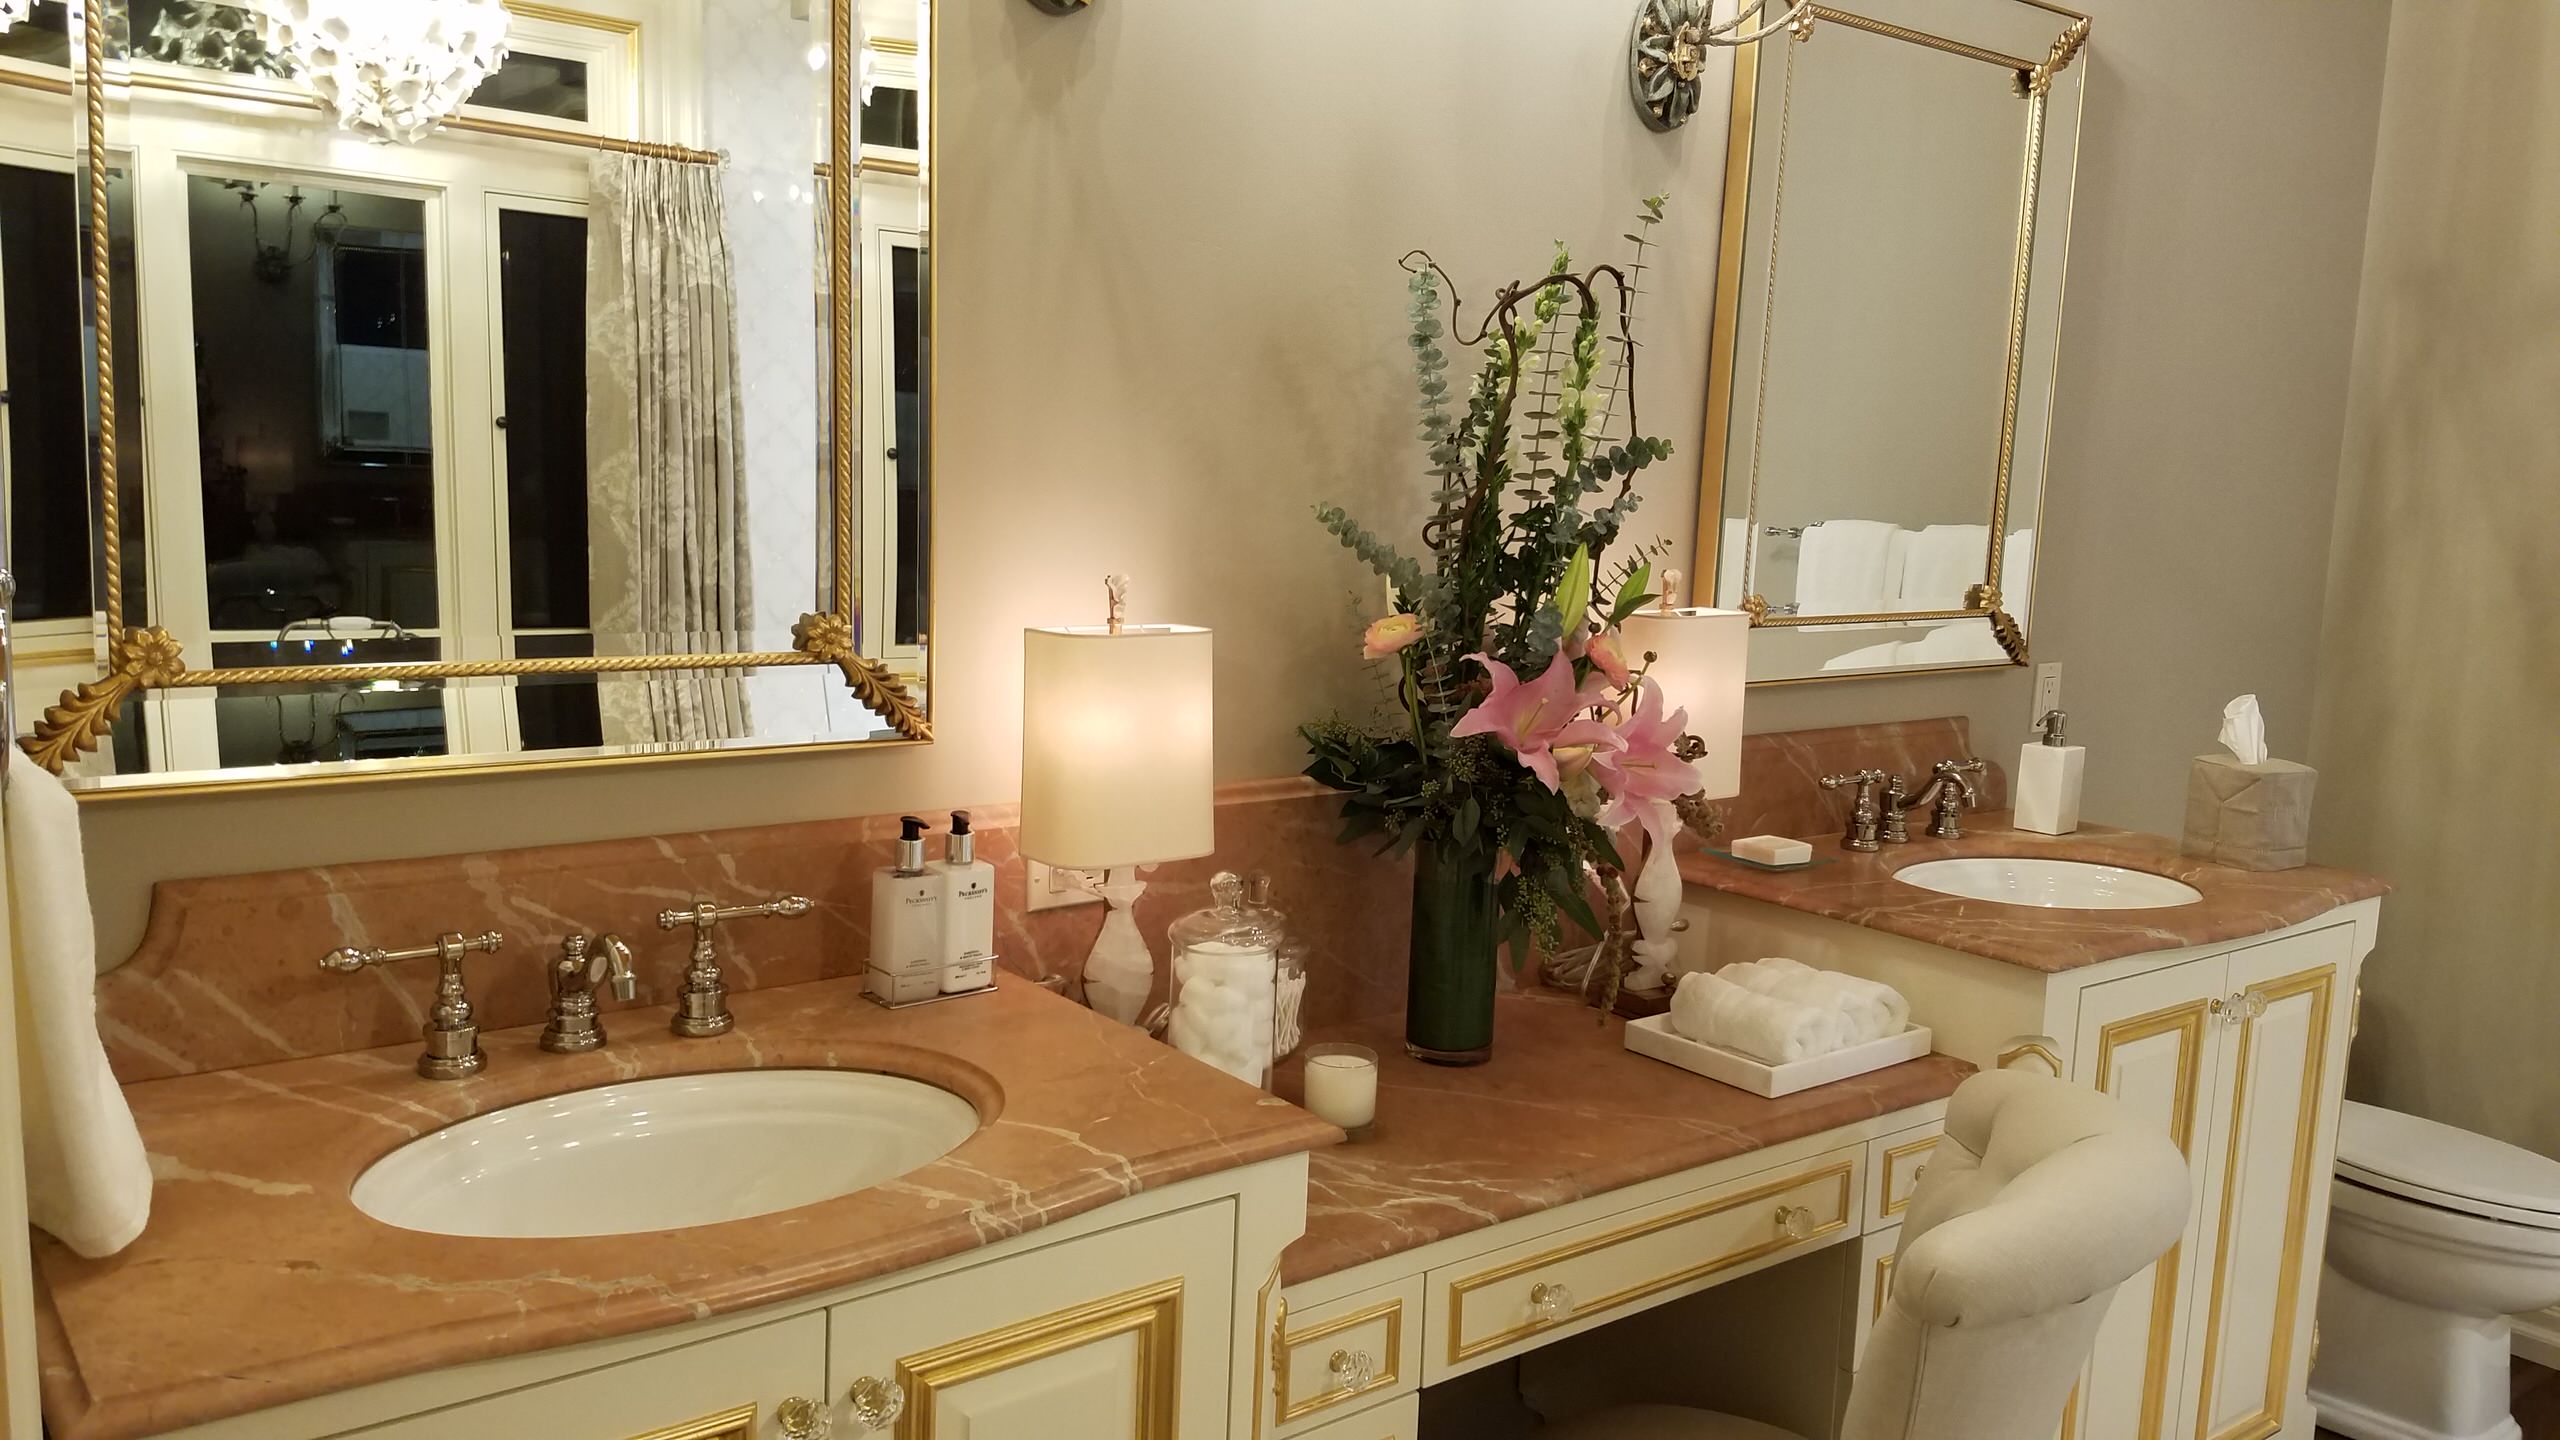 Crema Mafill/Rojo Alicante Marble Listello Bath shower Kitchen Backsplash Wall 